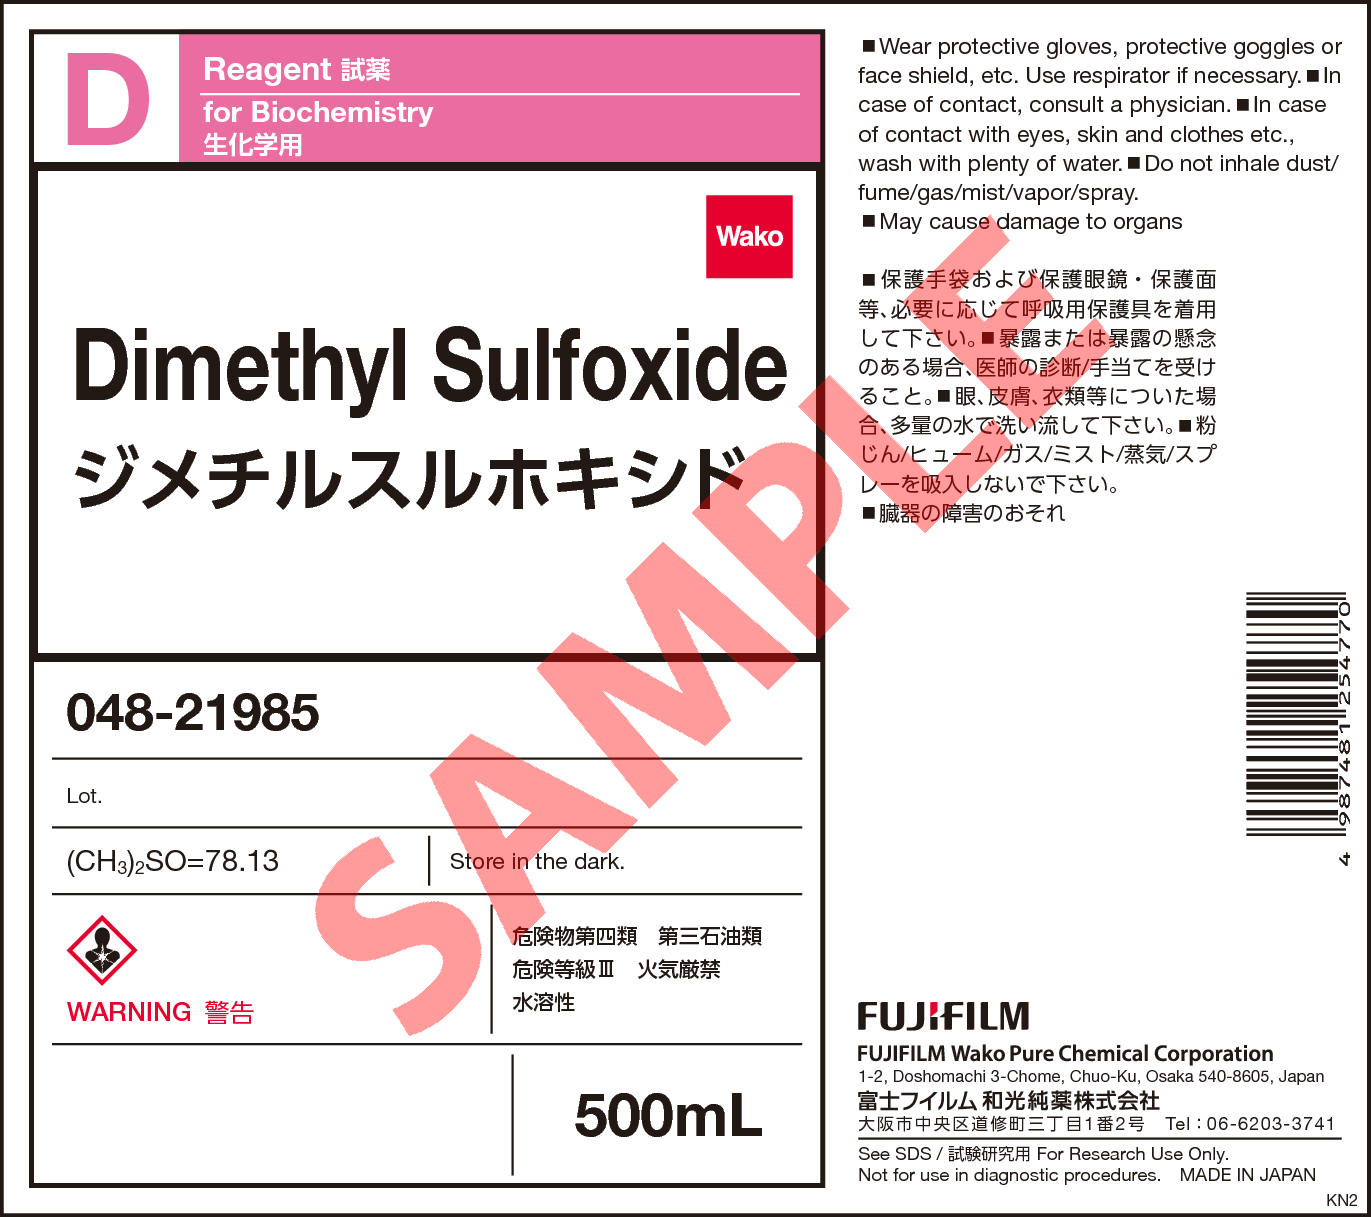 67 68 5 ジメチルスルホキシド Dimethyl Sulfoxide 046 048 詳細情報 試薬 富士フイルム和光純薬